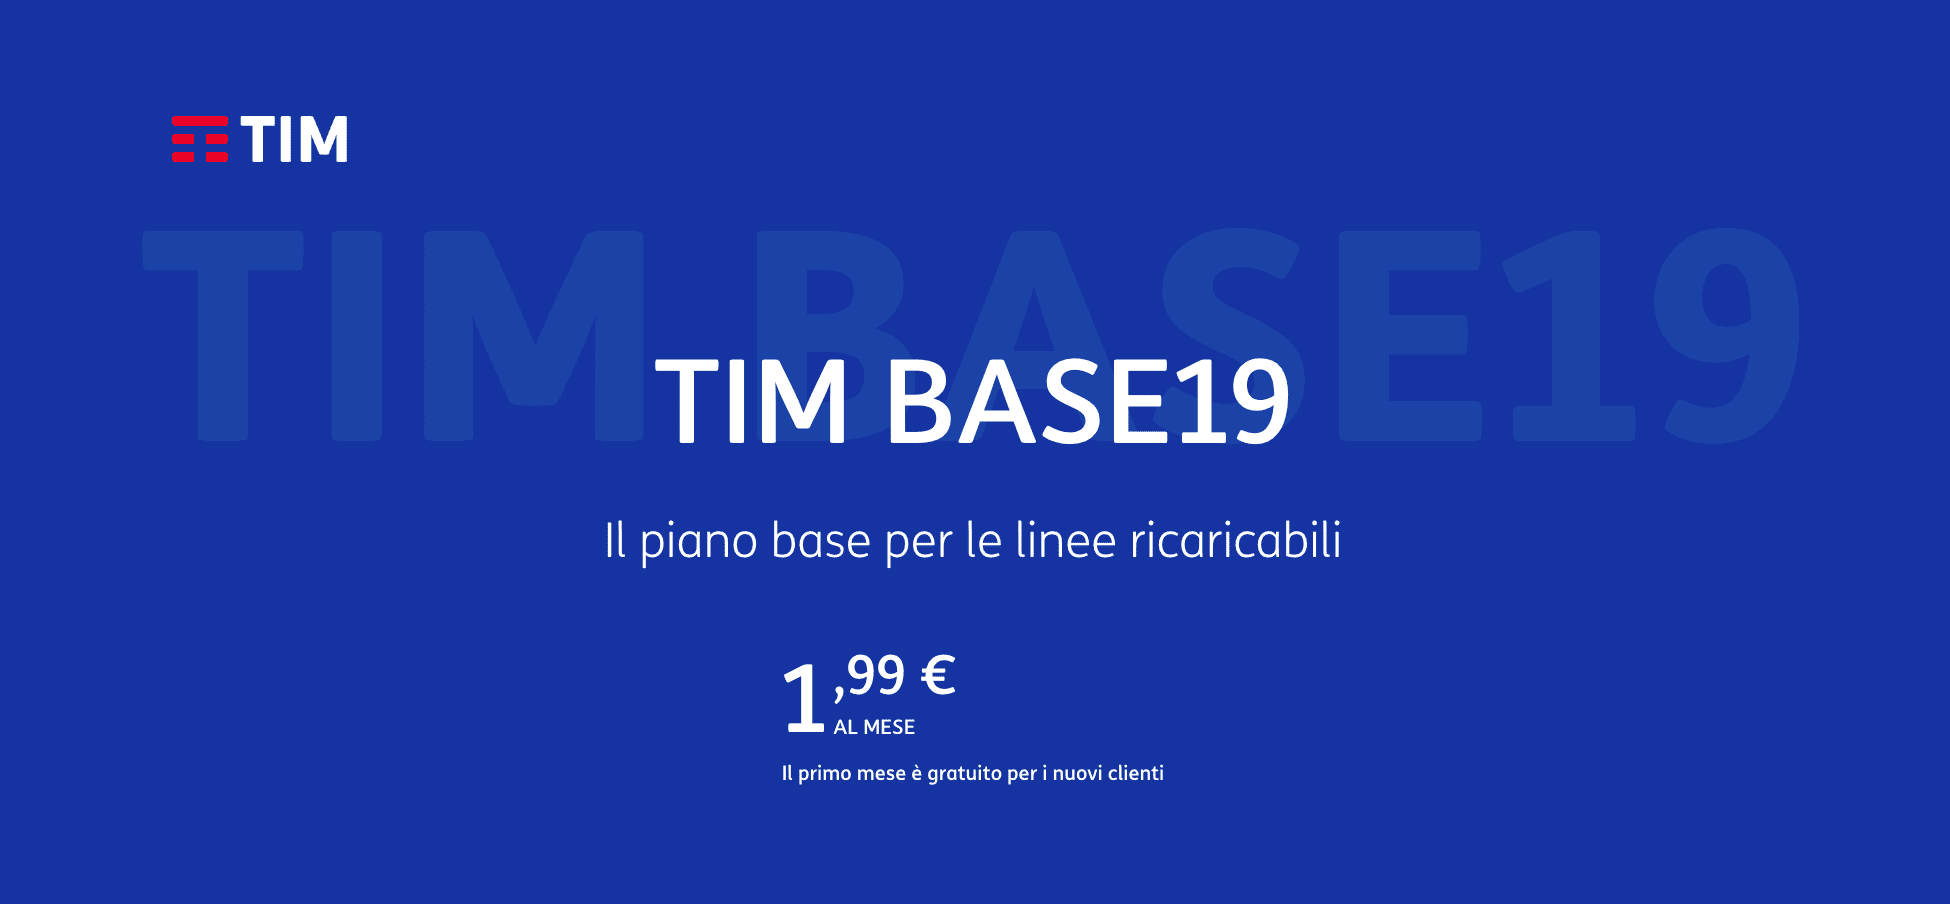 TIM Base19, l'offerta ricaricabile di TIM